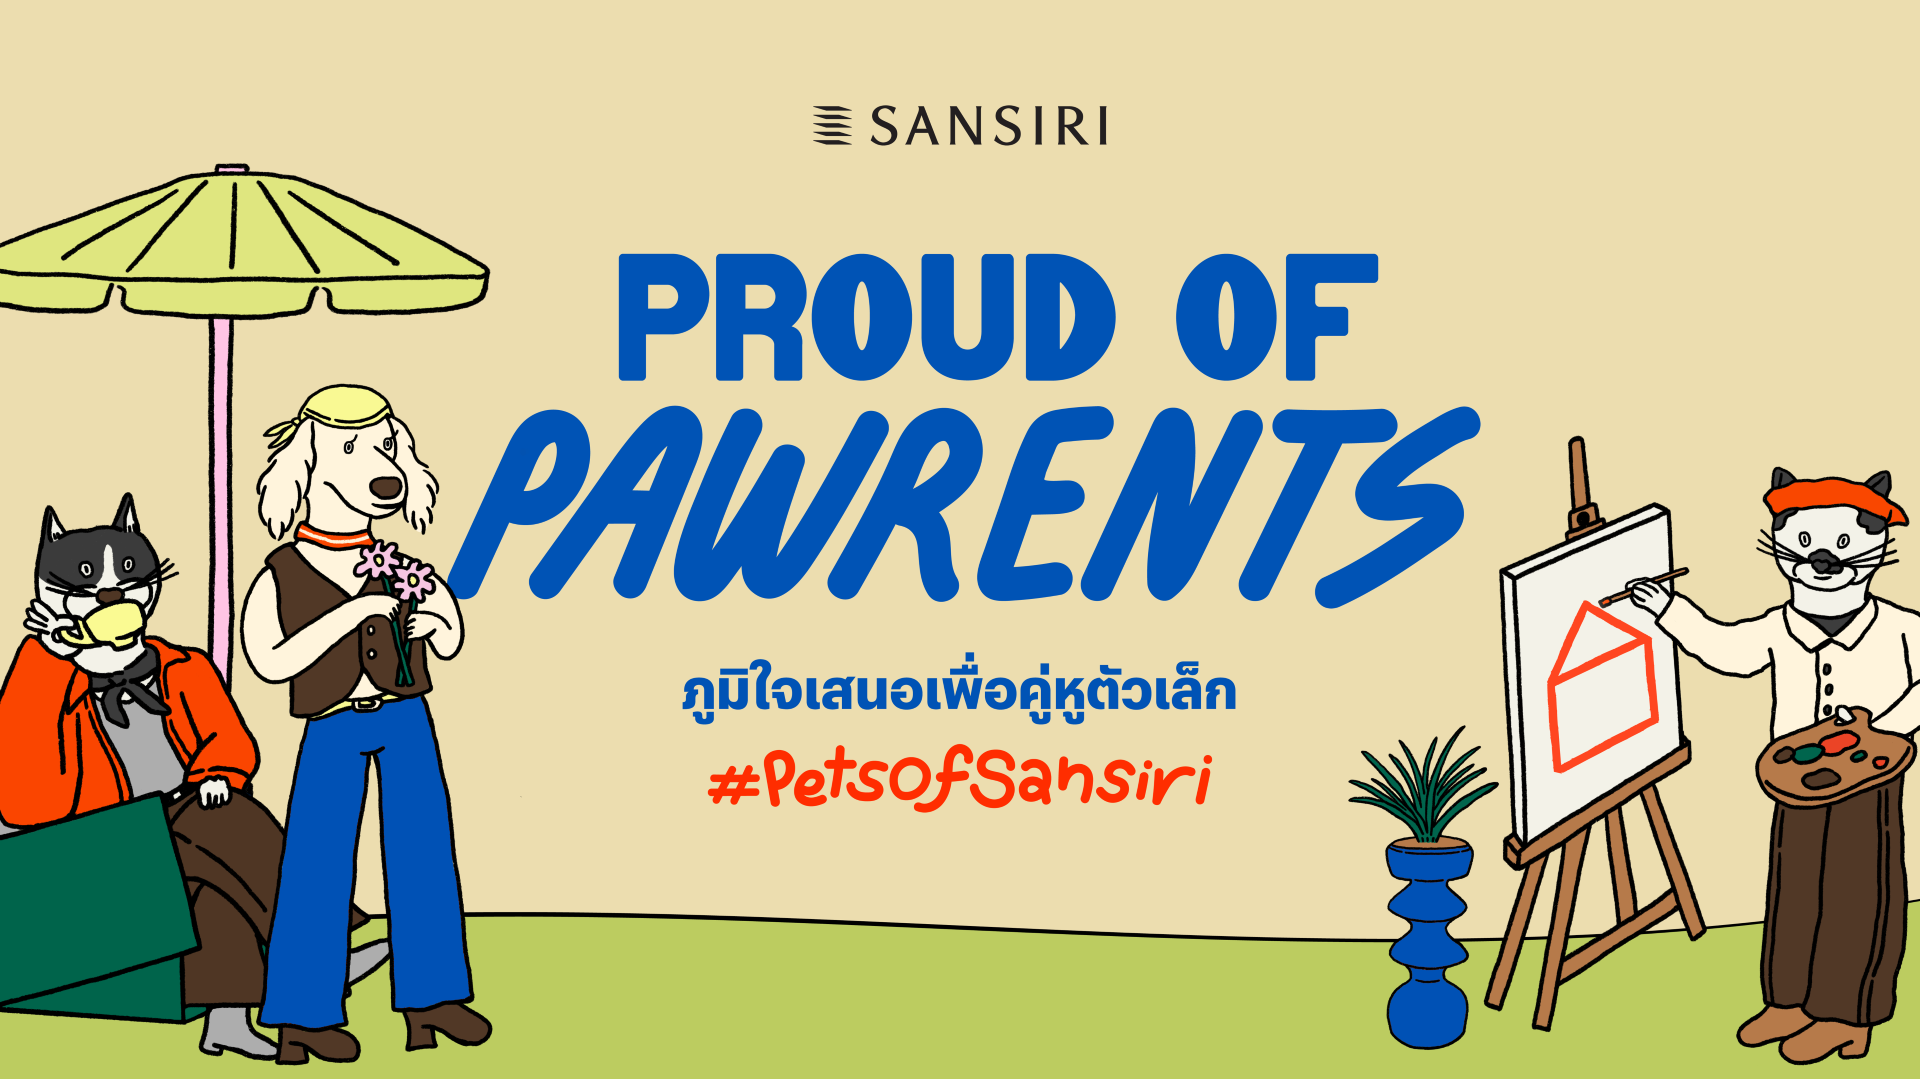 แสนสิริ ผู้นำด้านดีไซน์และคุณภาพบริการ ถอดอินไซต์ Pet Parent สู่แคมเปญ Sansiri Proud of Pawrents ออกแบบบ้าน คอนโด 